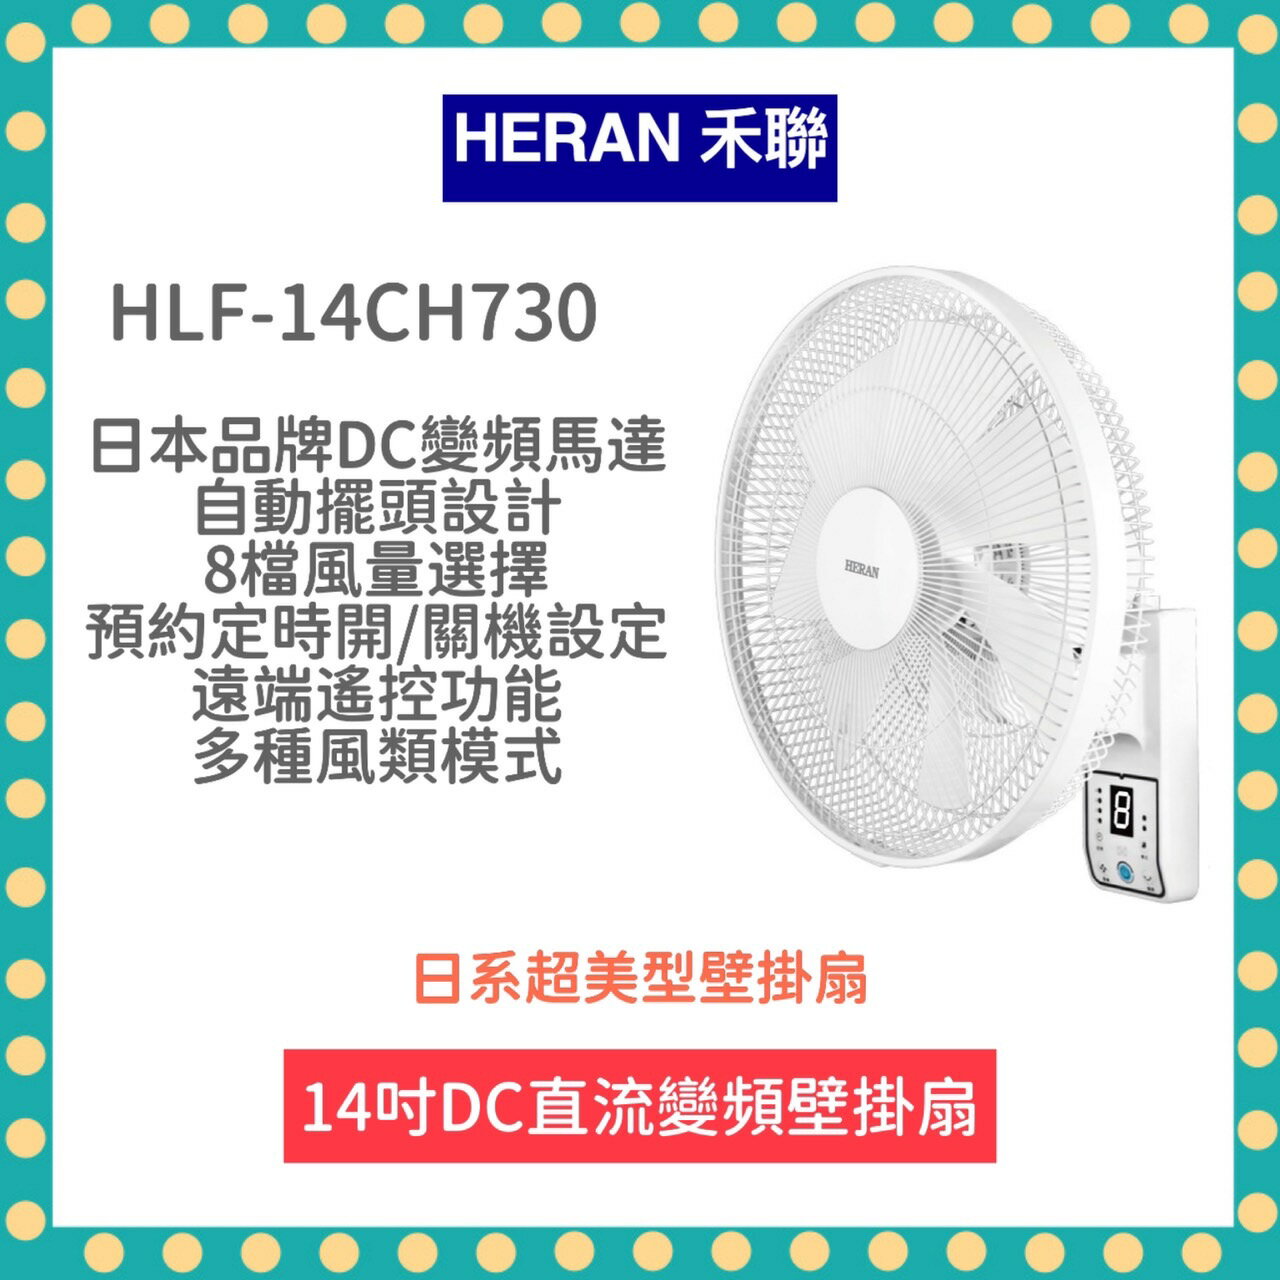 【免運費 限時優惠 附發票】HLF 14CH730 14吋 智能 7扇葉 變頻 壁掛扇 DC風扇 電風扇 遙控功能 電扇 禾聯